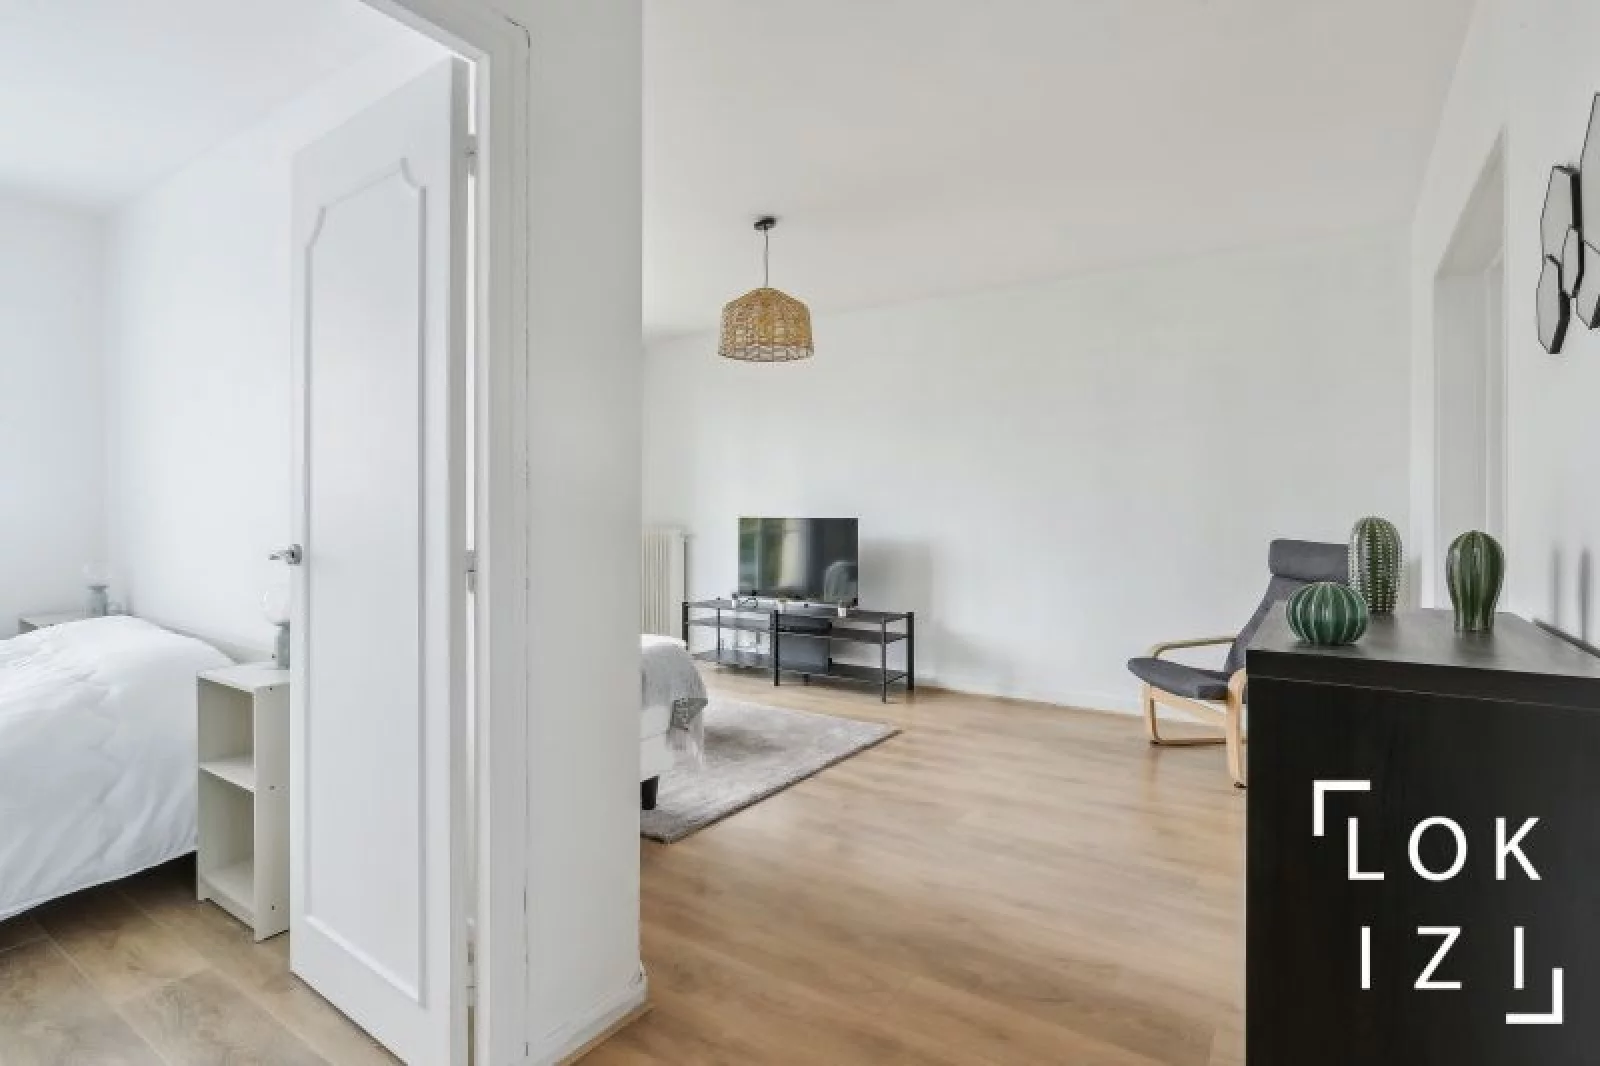 Location appartement 3 pièces 66m² (Paris est- Champigny sur Marne 94)